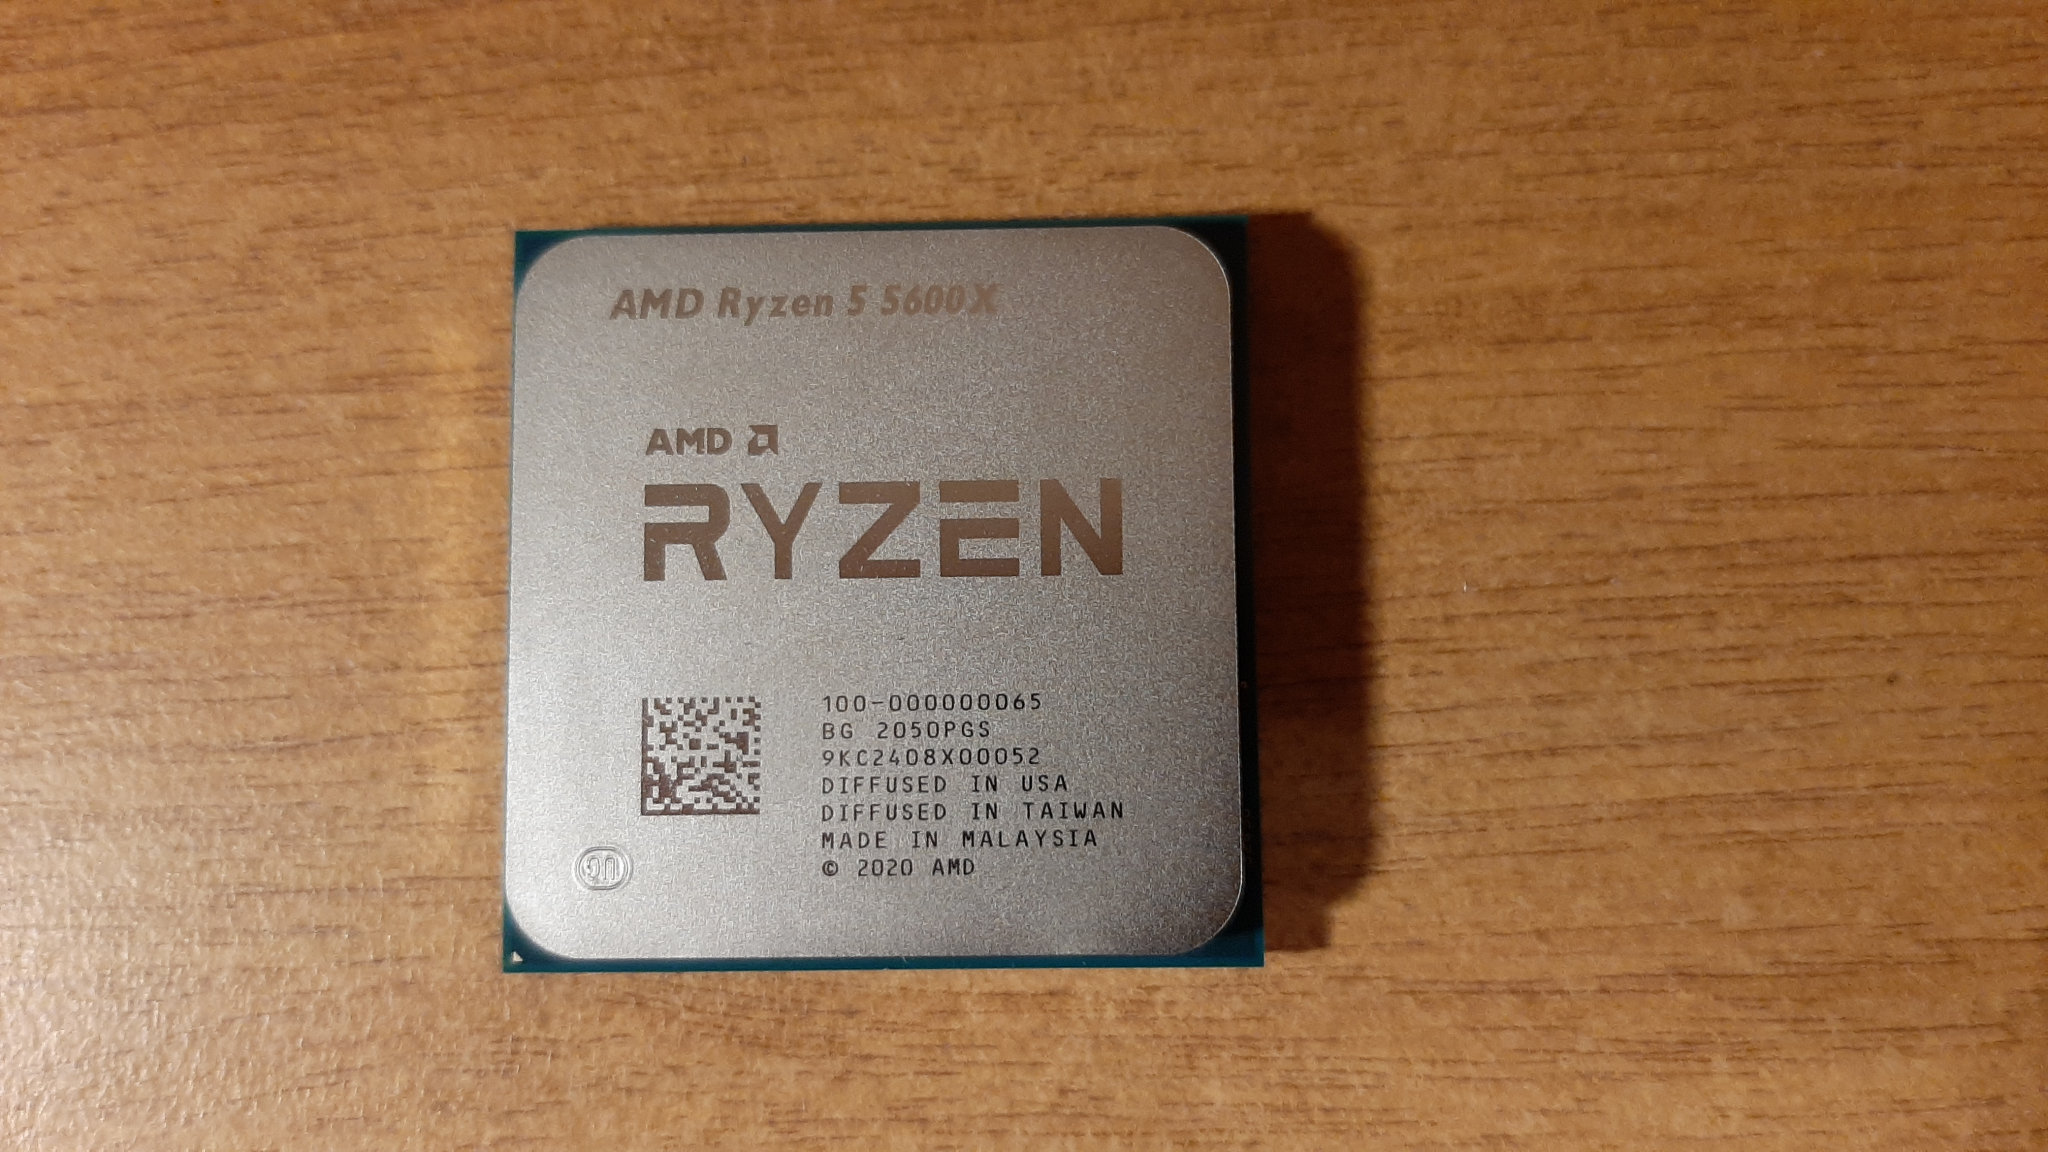 Райзен 5 5600. Процессор AMD Ryzen 5 5600x OEM am4 Vermeer (100-000000065). Процессор AMD Ryzen 5 5600 Box. AMD 5 5600x OEM. Процессор AMD Ryzen 5 5600x am4 OEM.